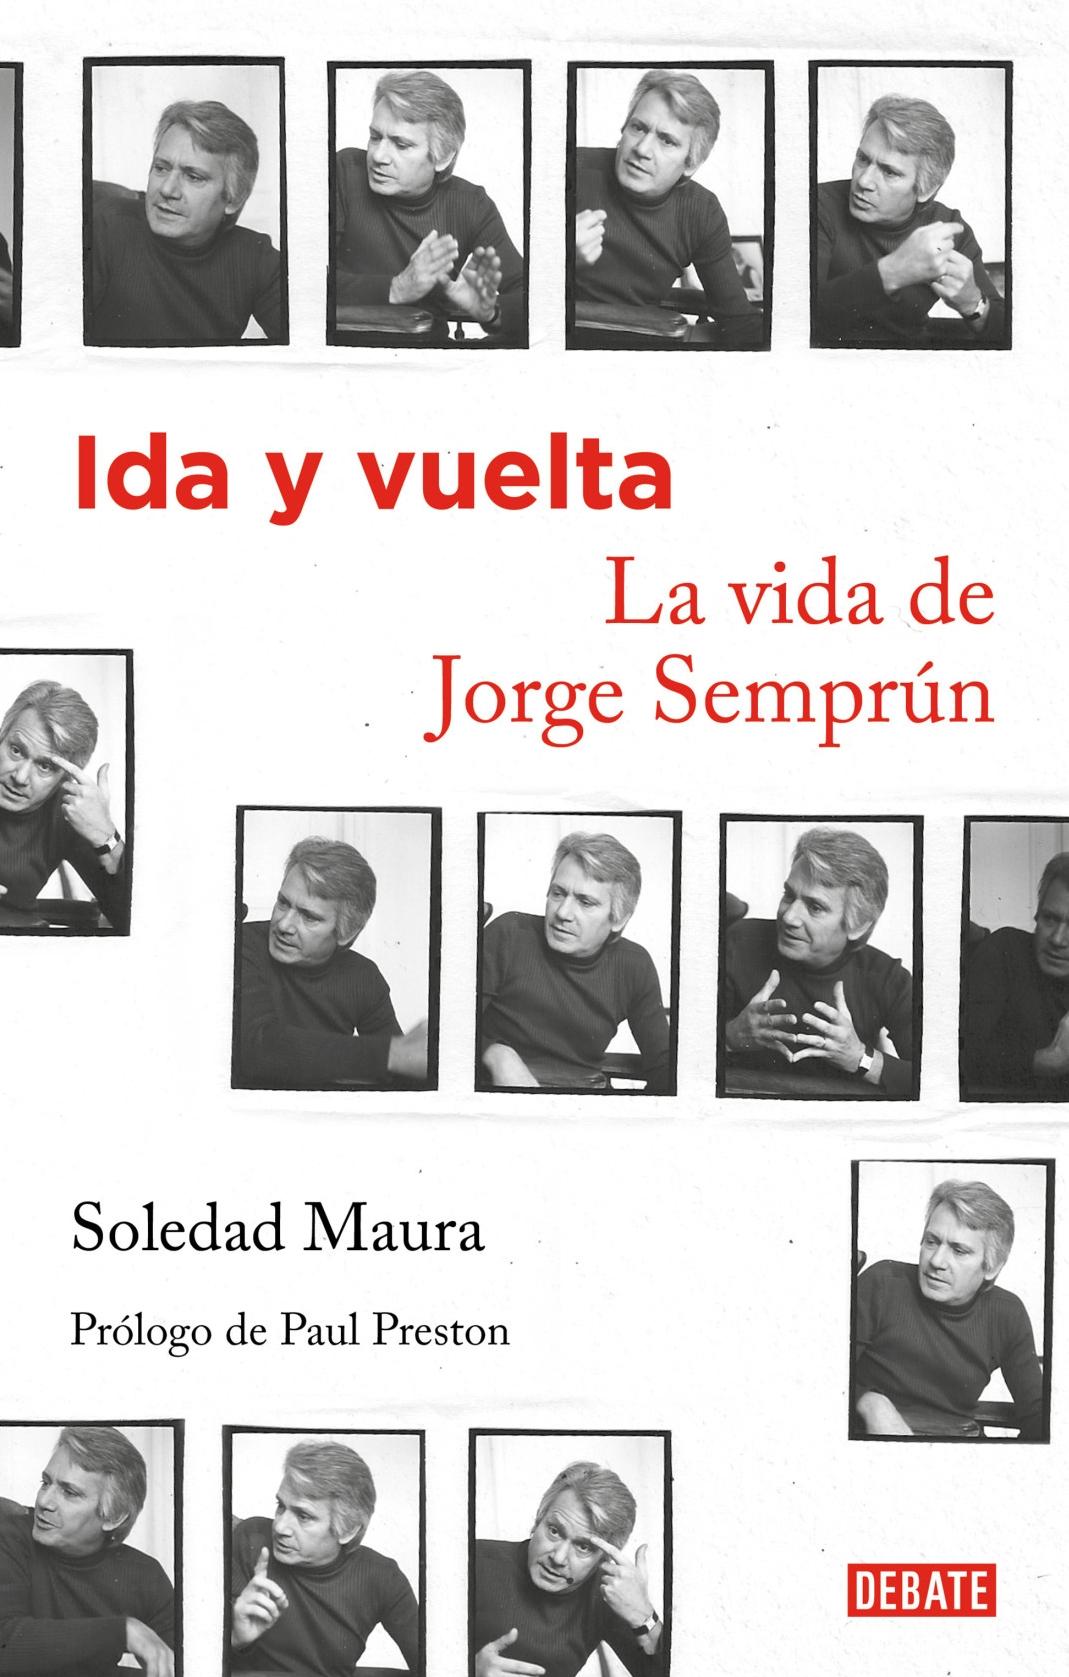 Ida y Vuelta "La Vida de Jorge Semprún"